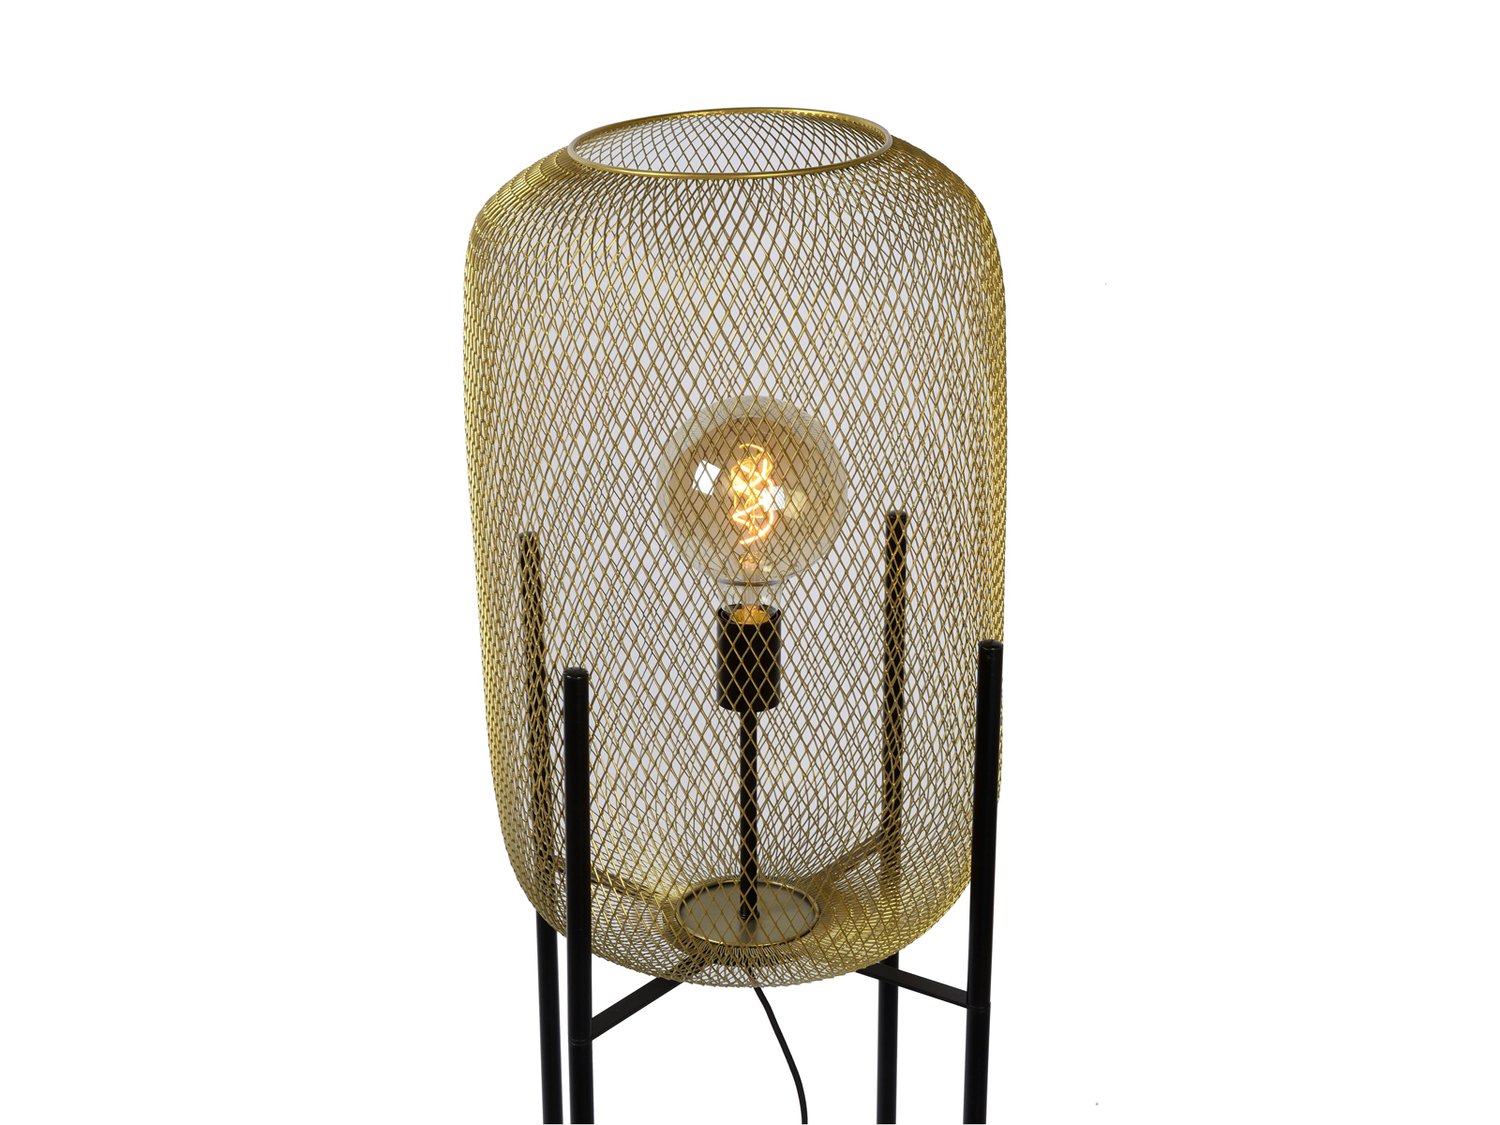 Stojací lampa Mesh matně zlaté / mosaz, E27, 135cm